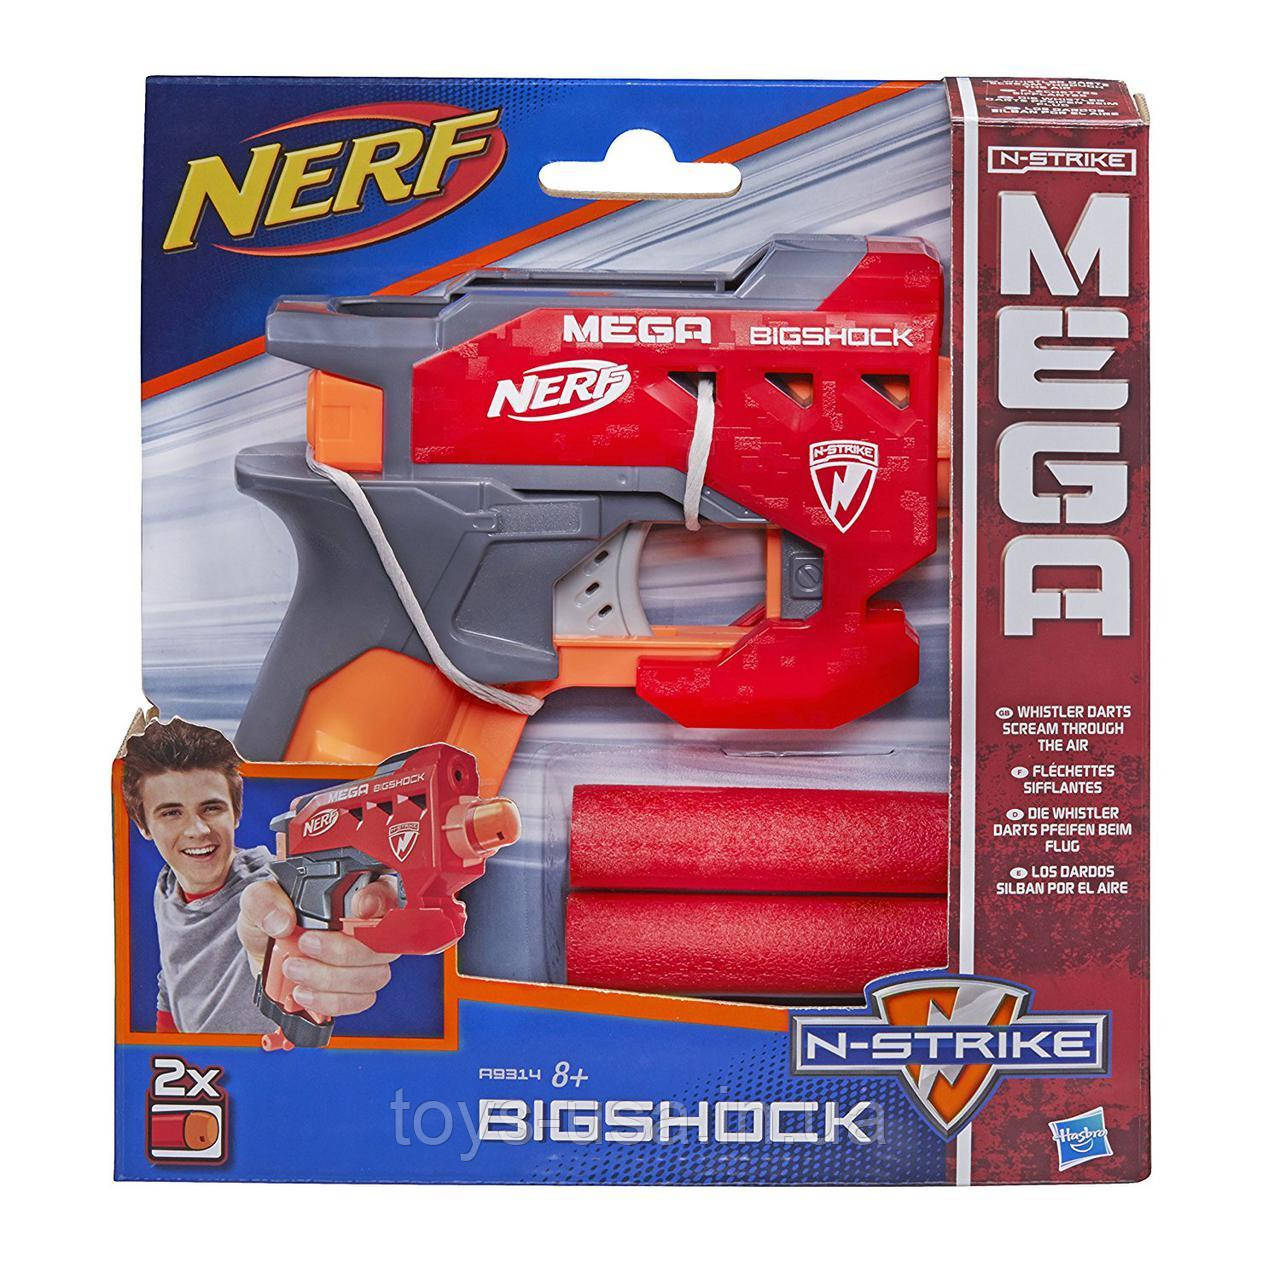 Пістолет Нерф з великими стрілами - Bigshock, N-Strike Mega, Nerf, Hasbro